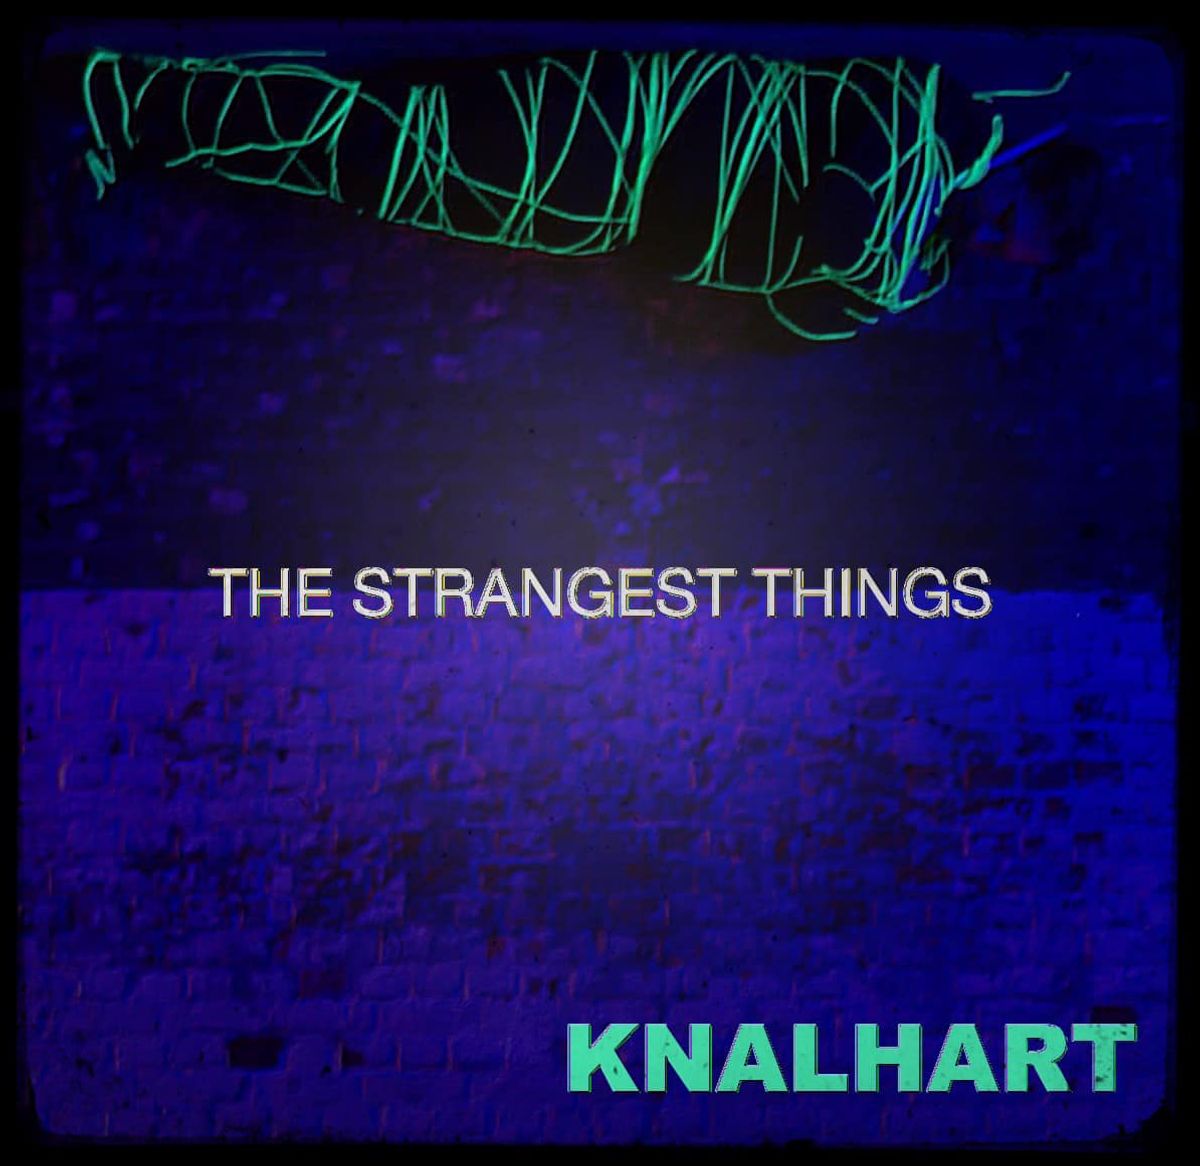 Knalhart - The Strangest Things